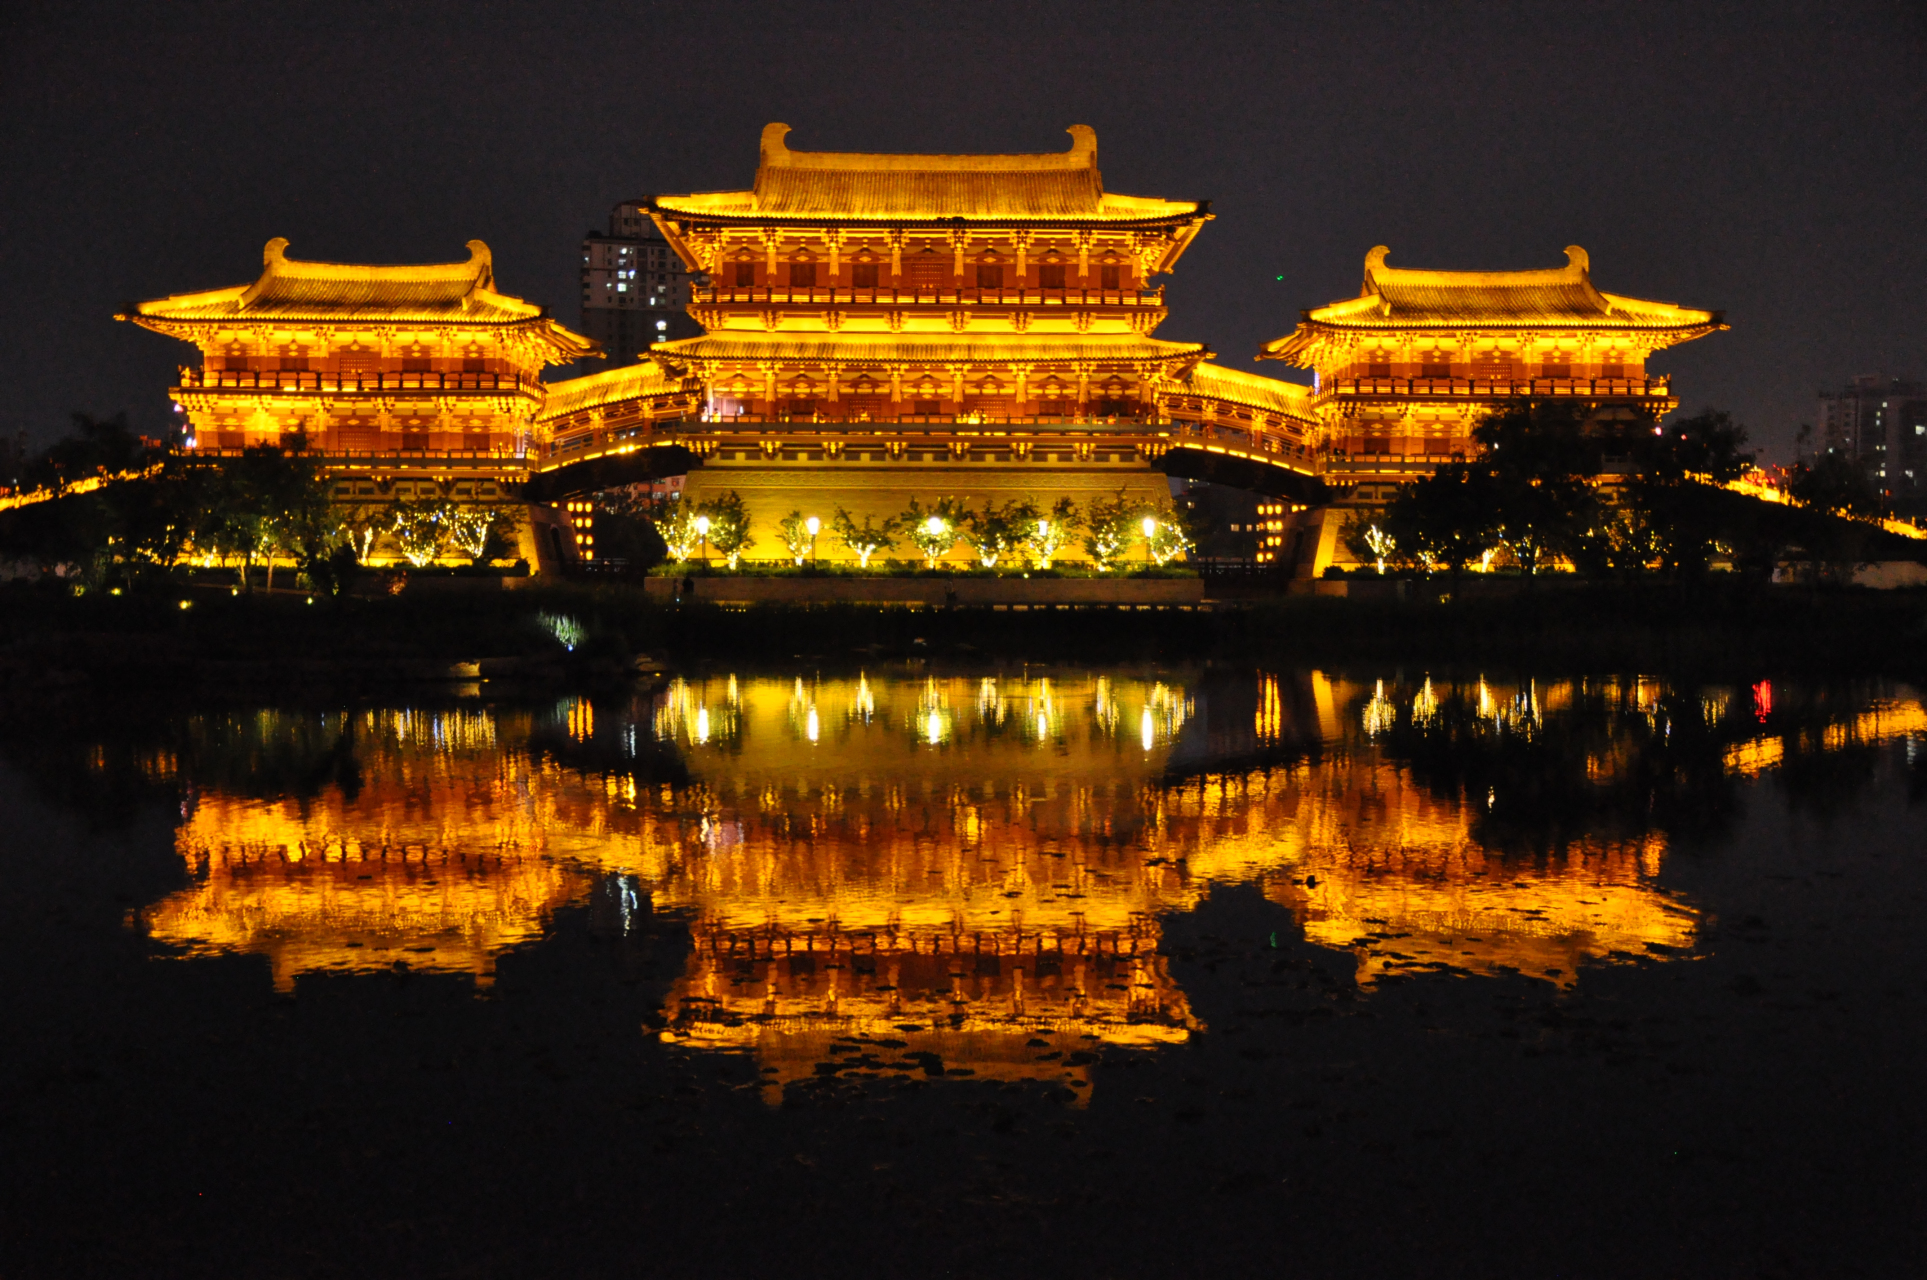 九洲池是隋唐洛阳城·宫城——紫微城内重要的皇家池苑,现在是人们身